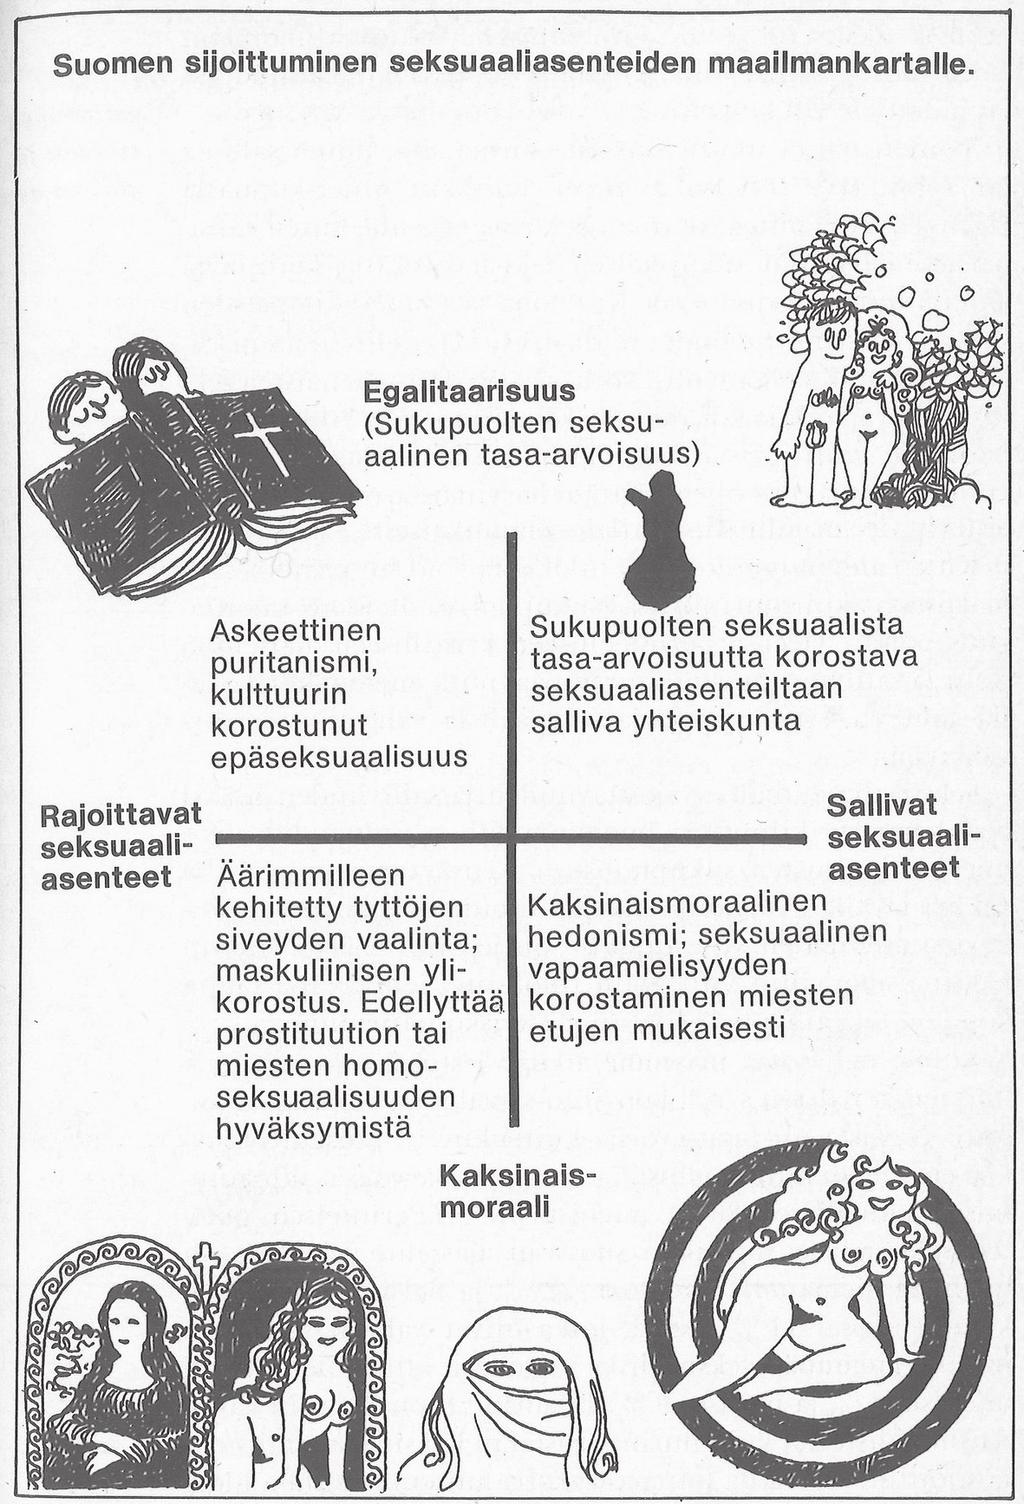 Suomalaisuus ja seksi Suomi seksuaaliasenteiden nelikentässä 1970-luvun alussa.